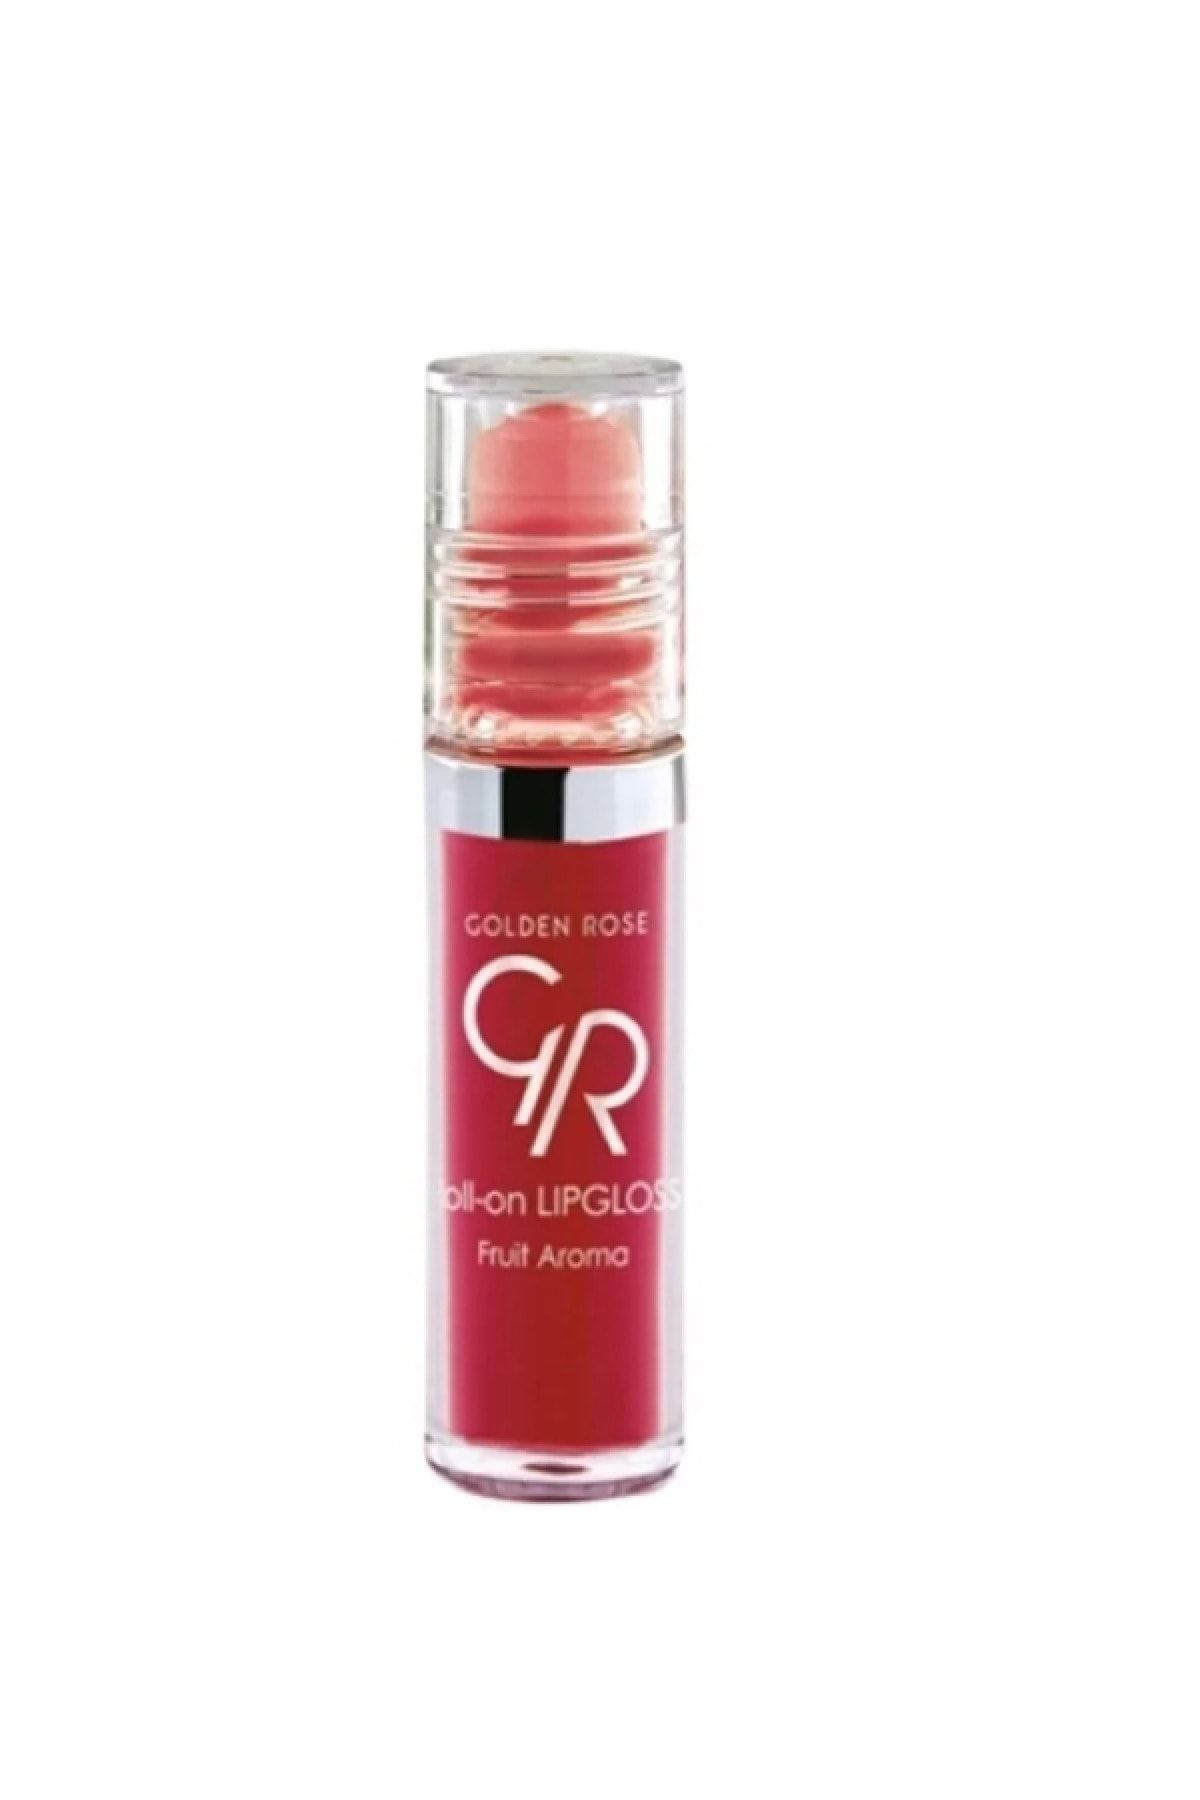 Golden Rose Meyveli Dudak Parlatıcısı - Roll On Lipgloss Çilek 8691190890520